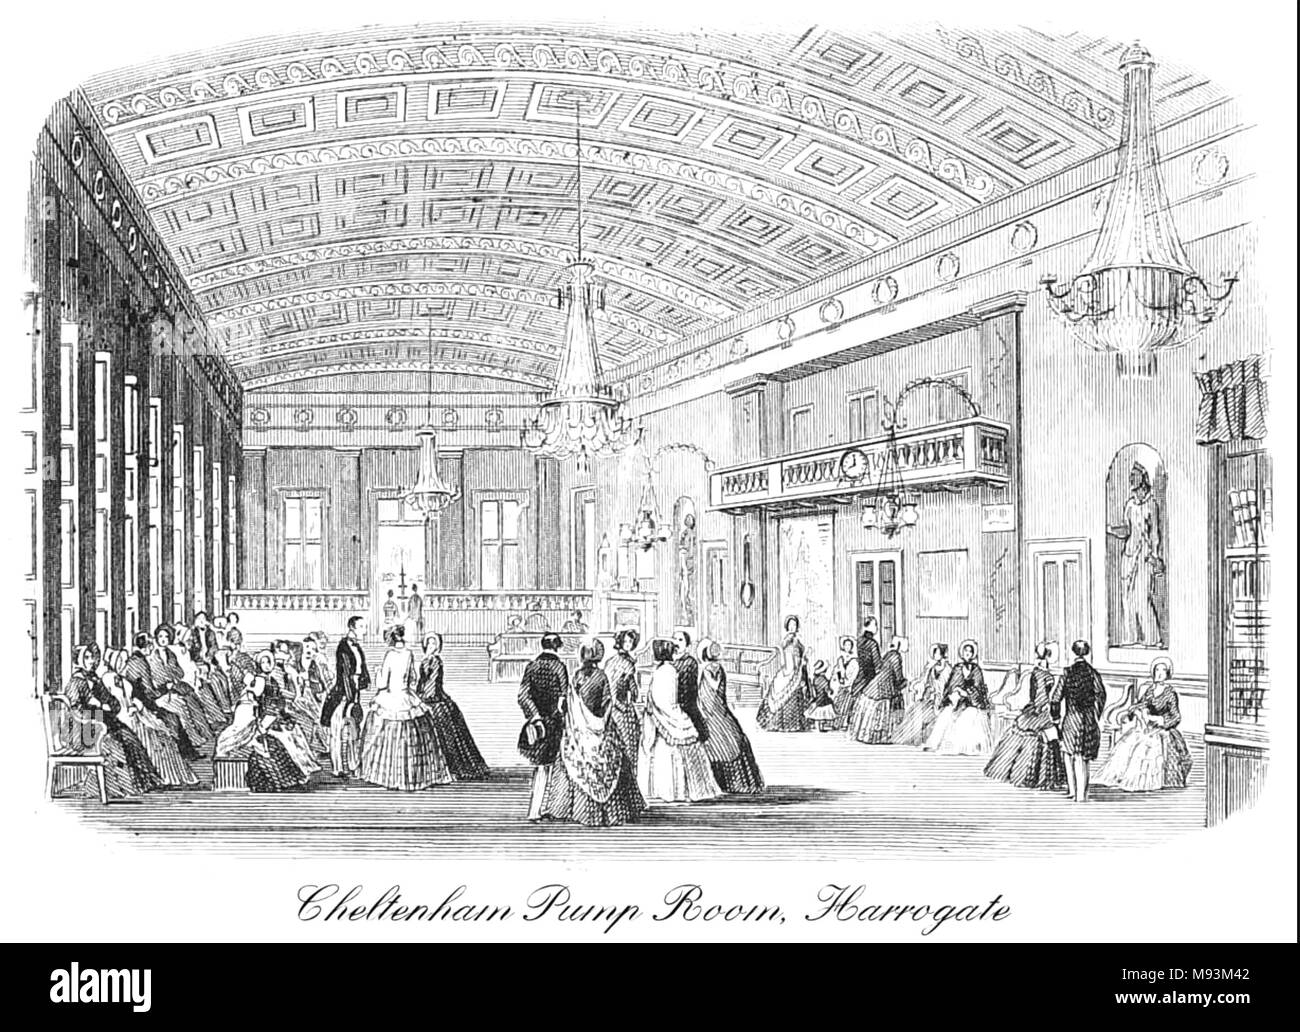 La salle des pompes de Cheltenham, Harrogate, Yorkshire, Angleterre, 1850 Banque D'Images